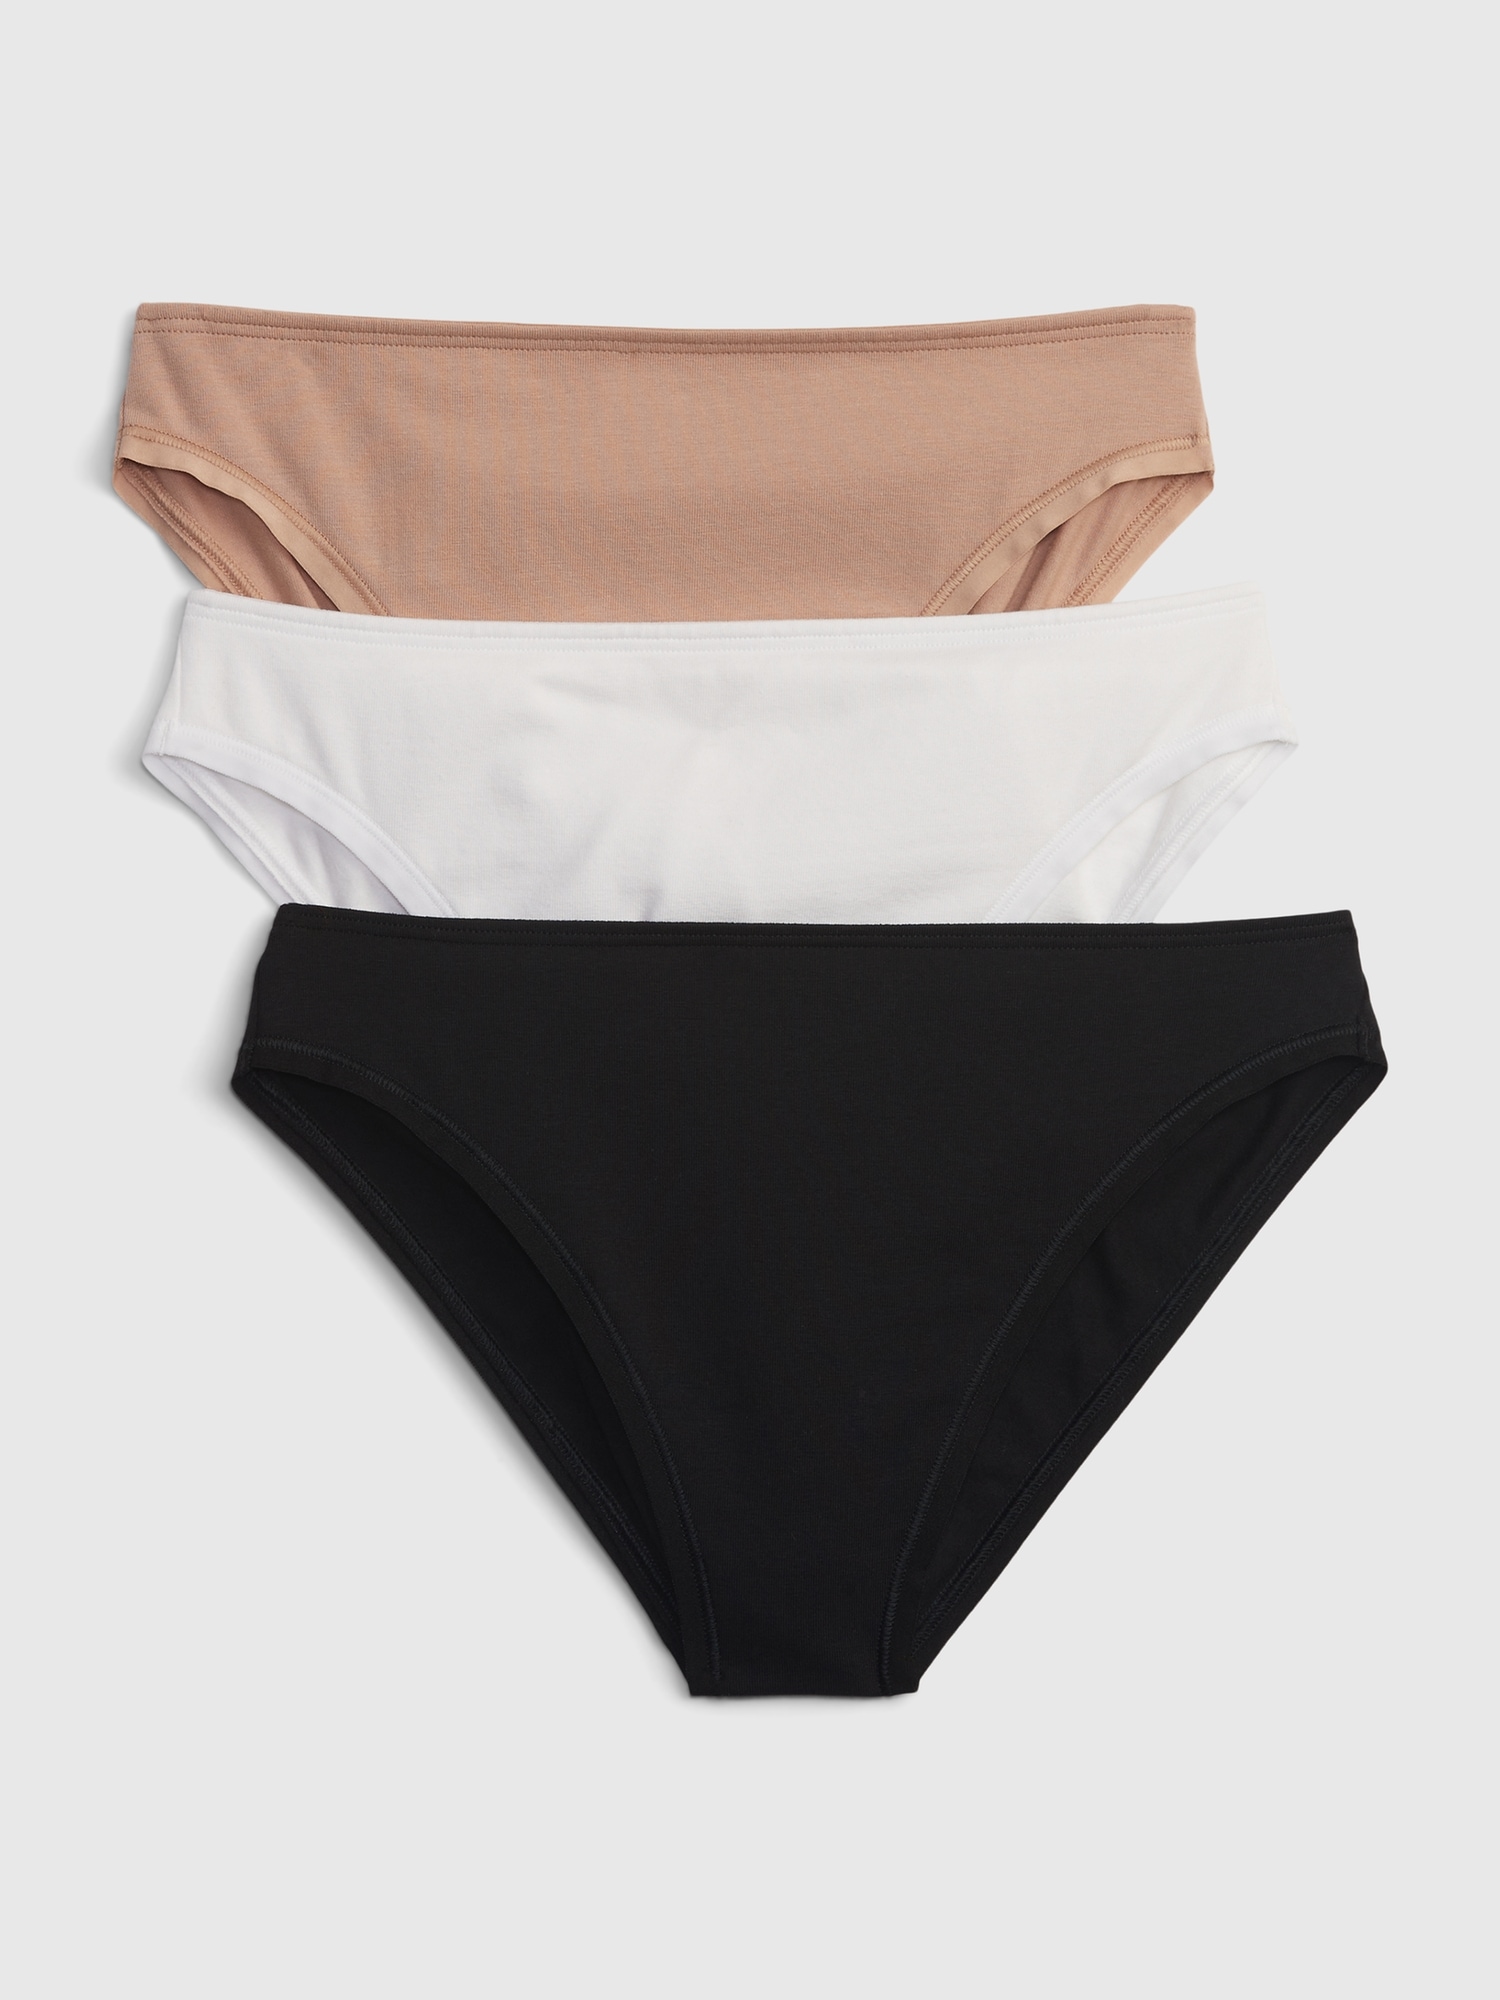 Cotton Stretch Hane s Bikini for Women Underwear 3pcs pack Panty